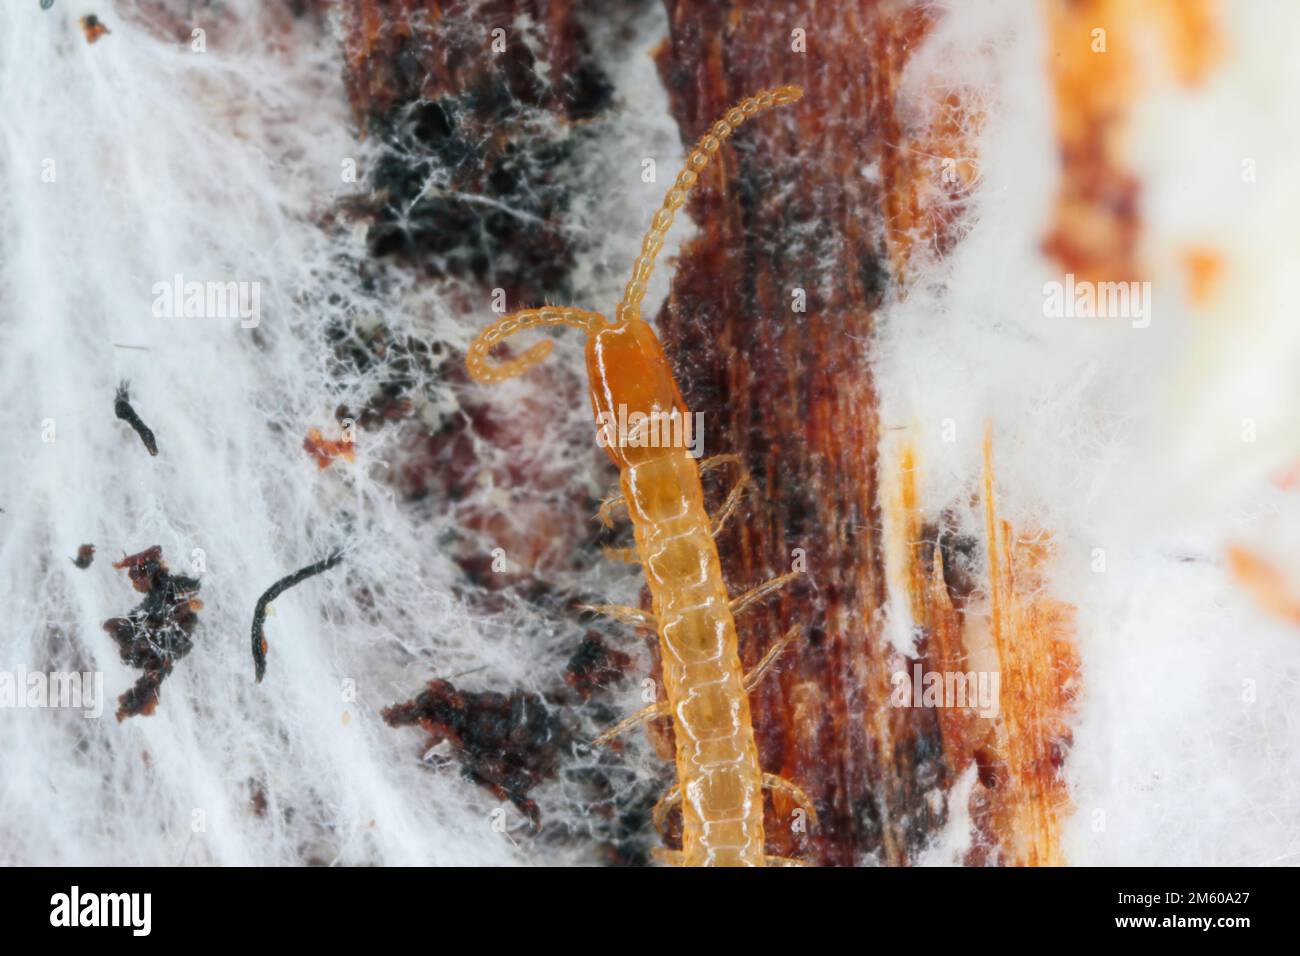 Centipede, Lithobiidae on wood, macro photo Stock Photo